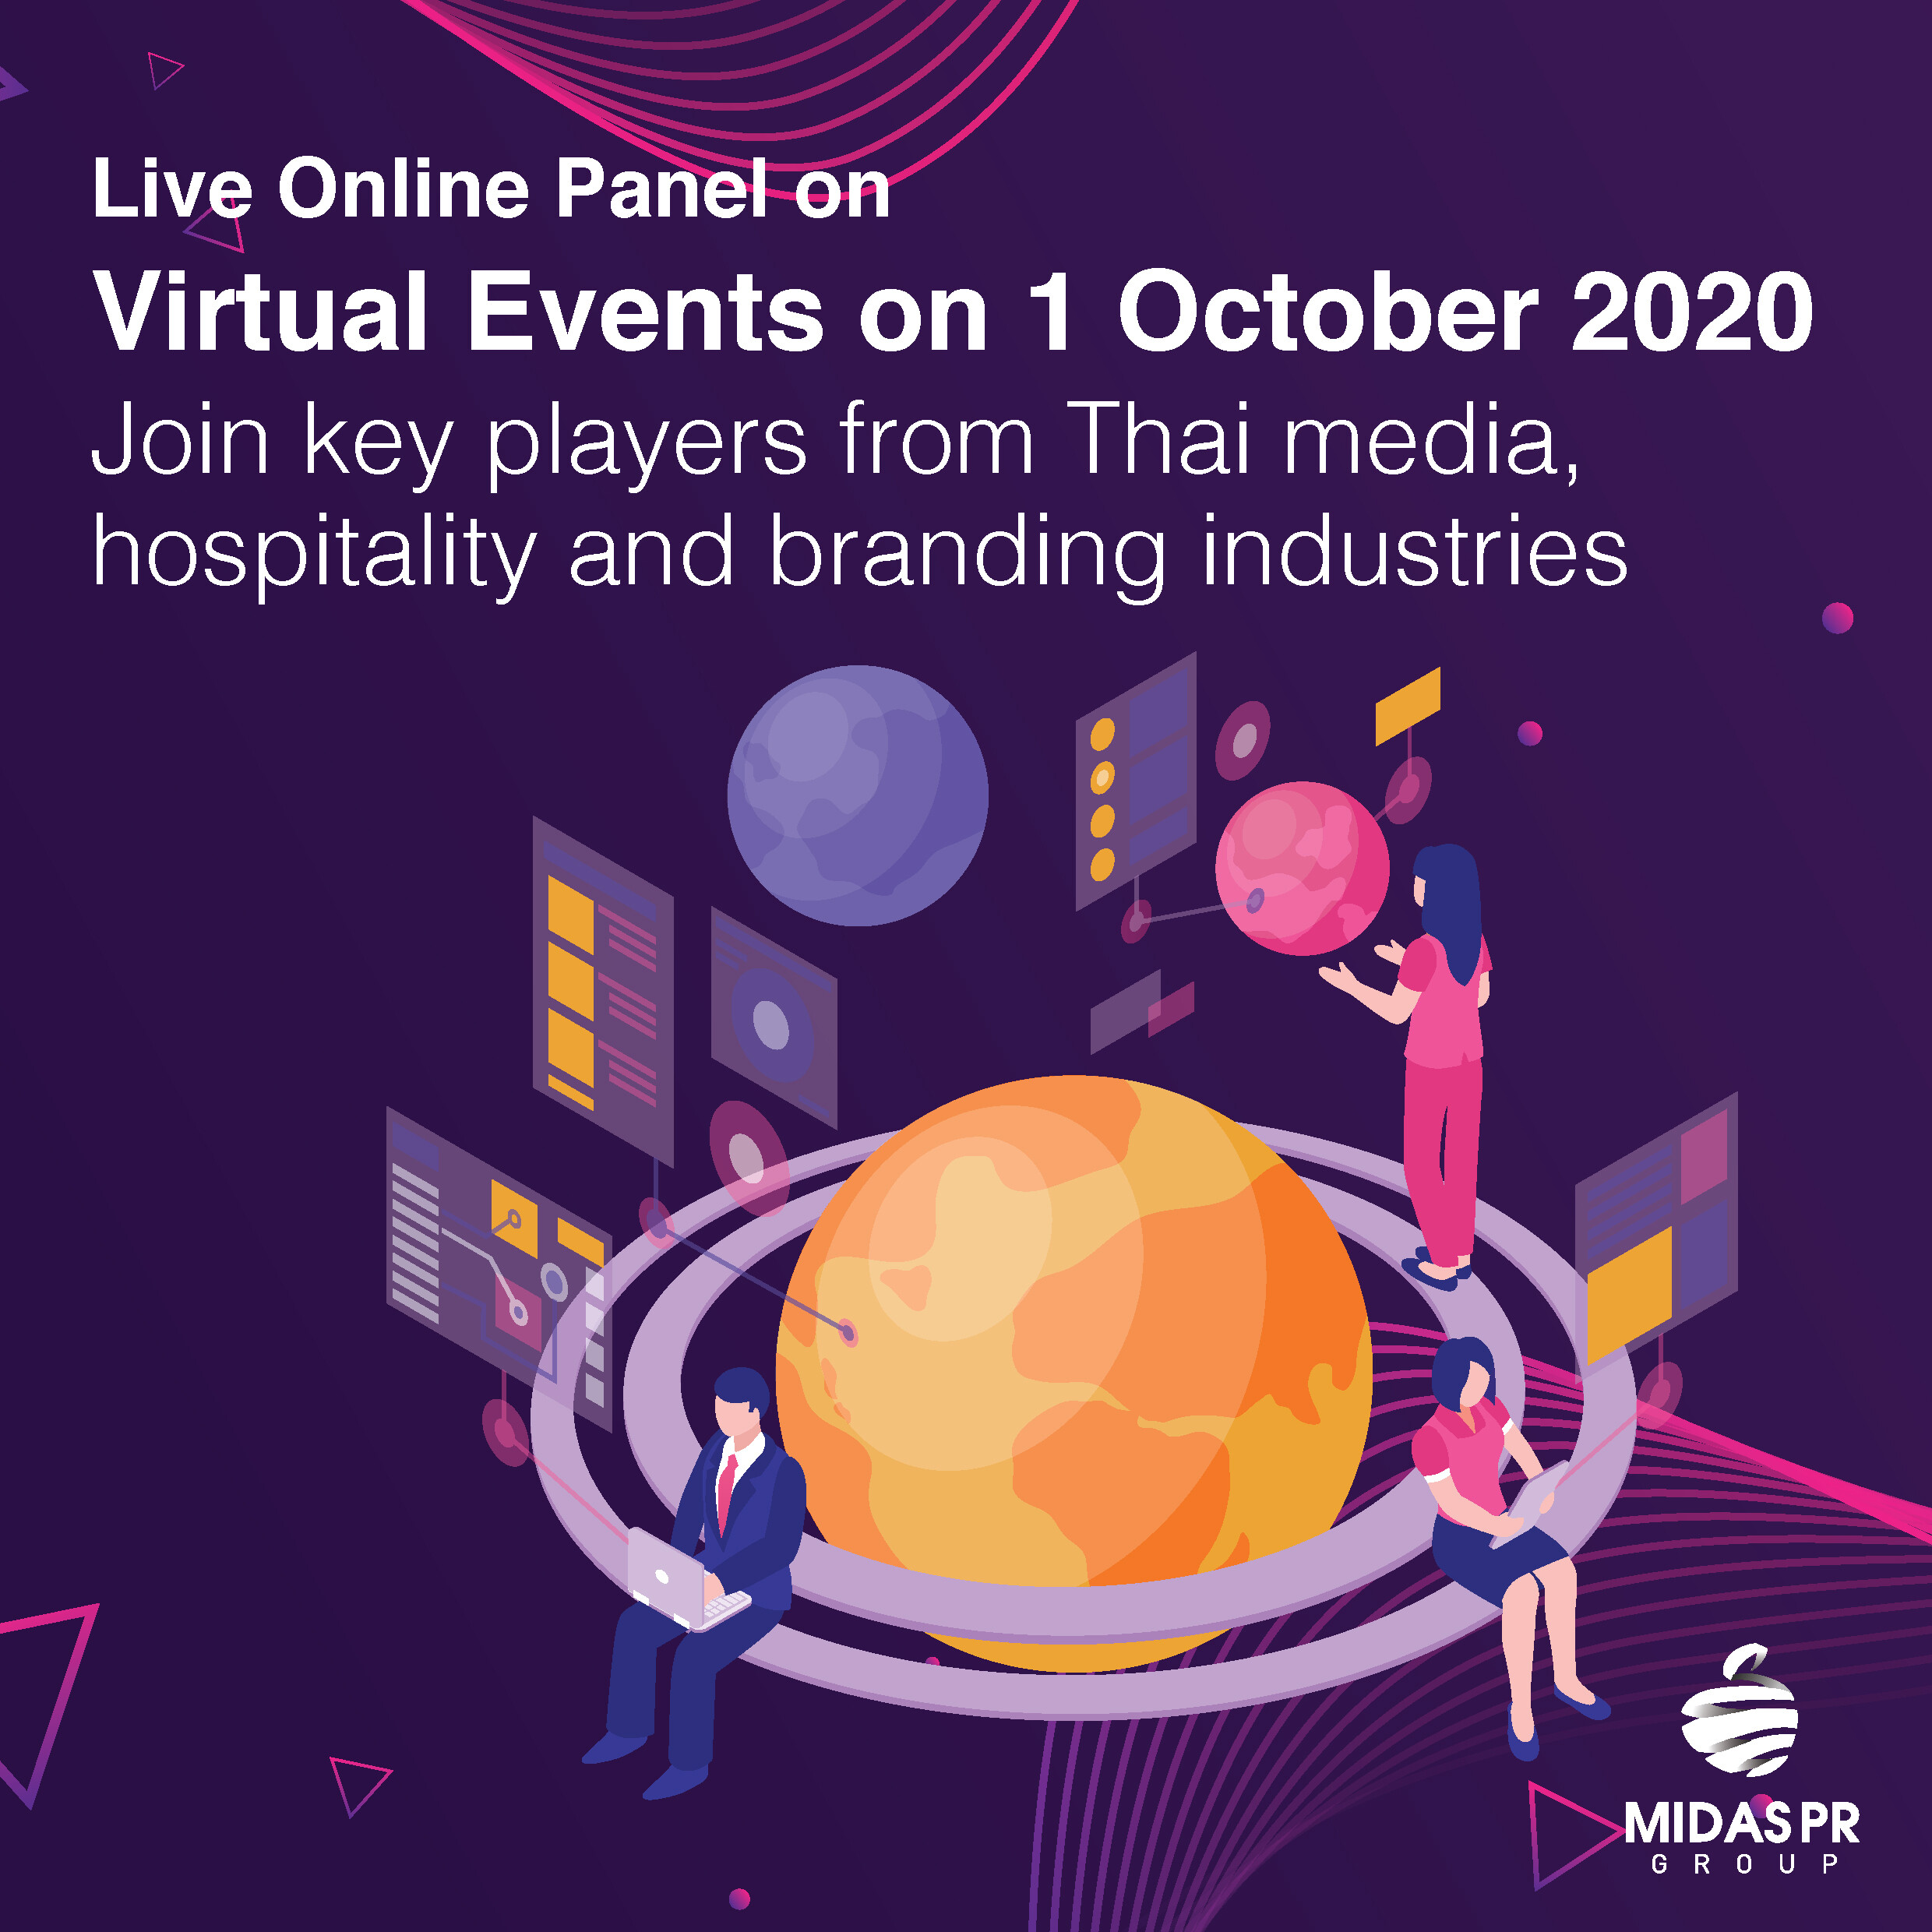 งานสัมมนาออนไลน์ Live ในหัวข้อ “การจัดงานแบบ Virtual Events” ในวันที่ 1 ตุลาคม 2020  เข้าร่วมกับผู้มีบทบาทสำคัญในอุตสาหกรรมสื่อไทย การบริการ และการสร้างแบรนด์ของไทย